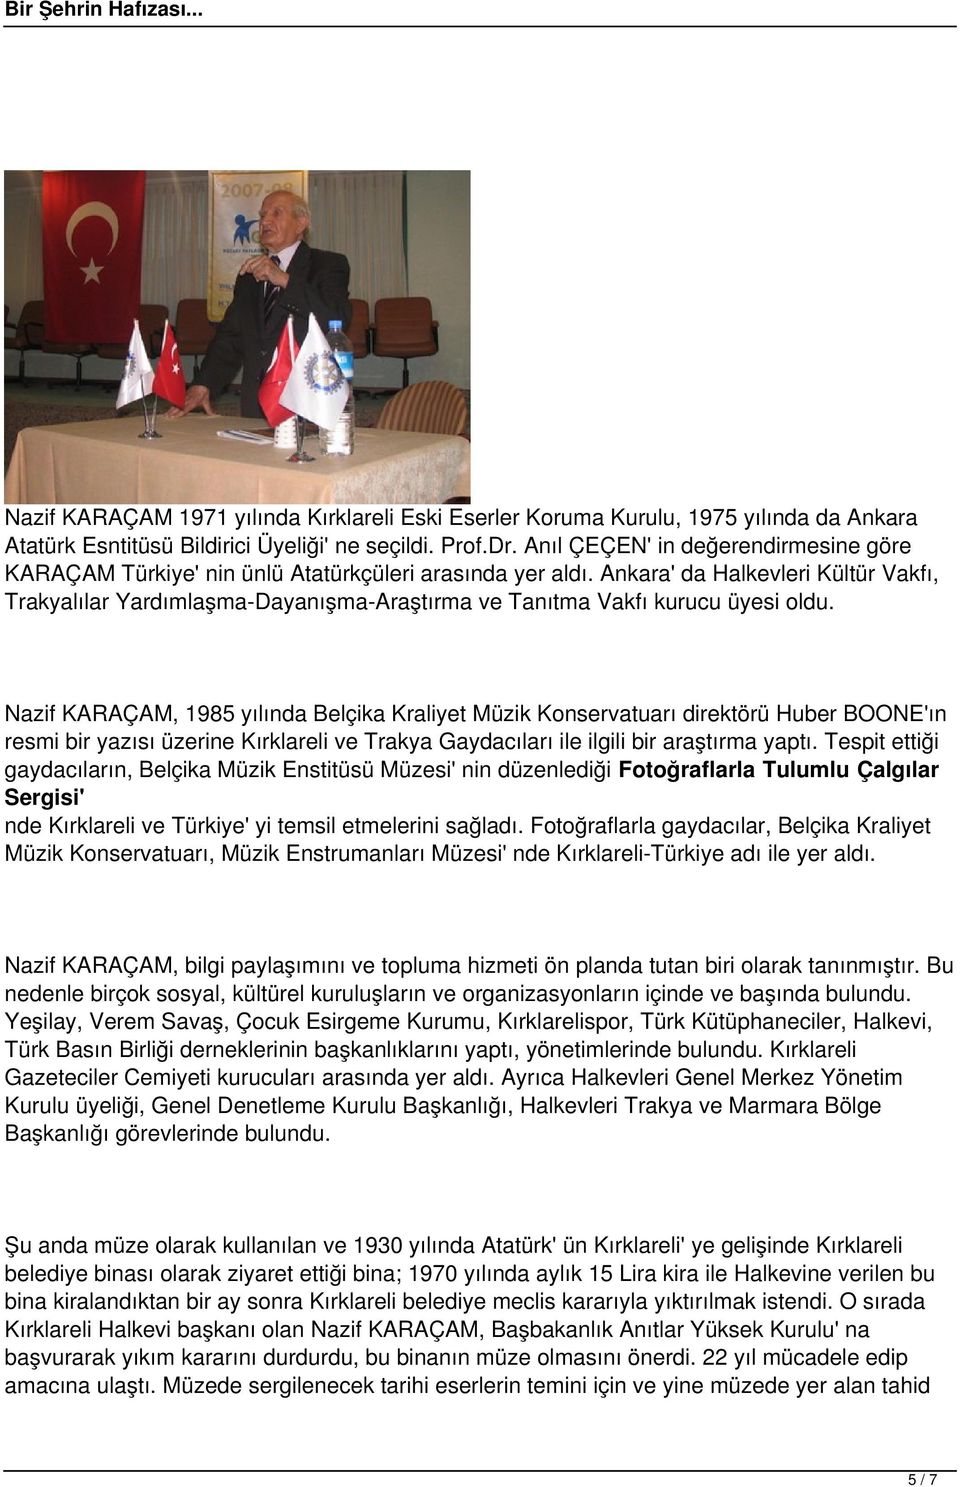 Ankara' da Halkevleri Kültür Vakfı, Trakyalılar Yardımlaşma-Dayanışma-Araştırma Tanıtma Vakfı kurucu üyesi oldu.